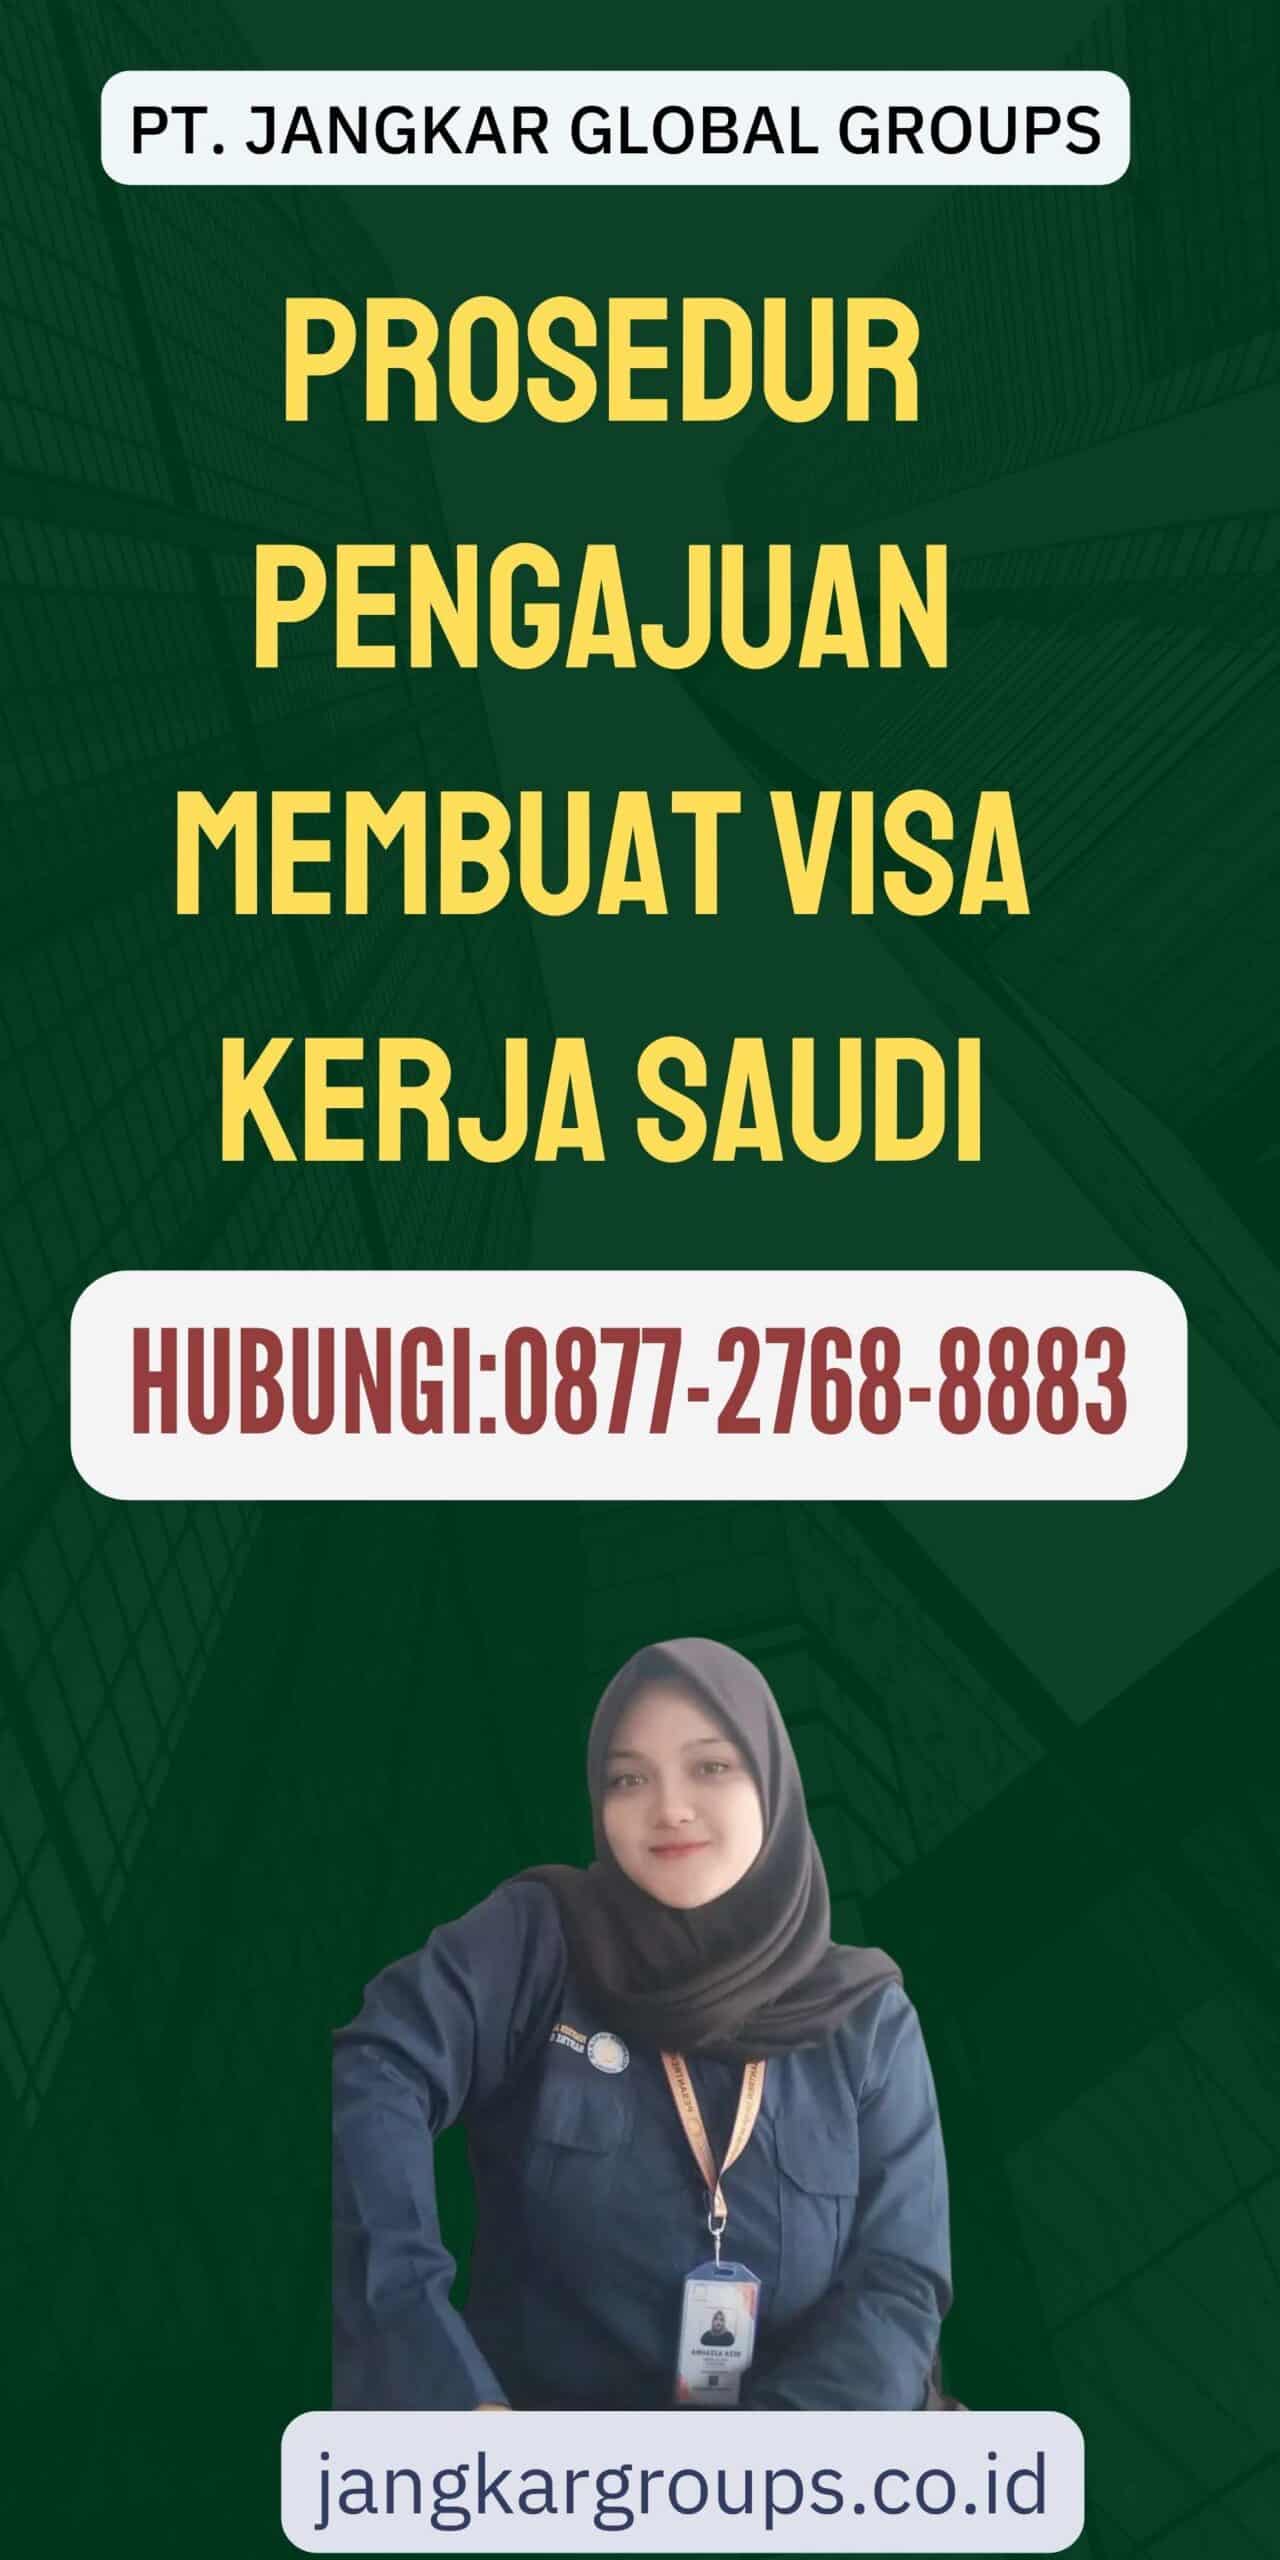 Prosedur Pengajuan Membuat Visa Kerja Saudi